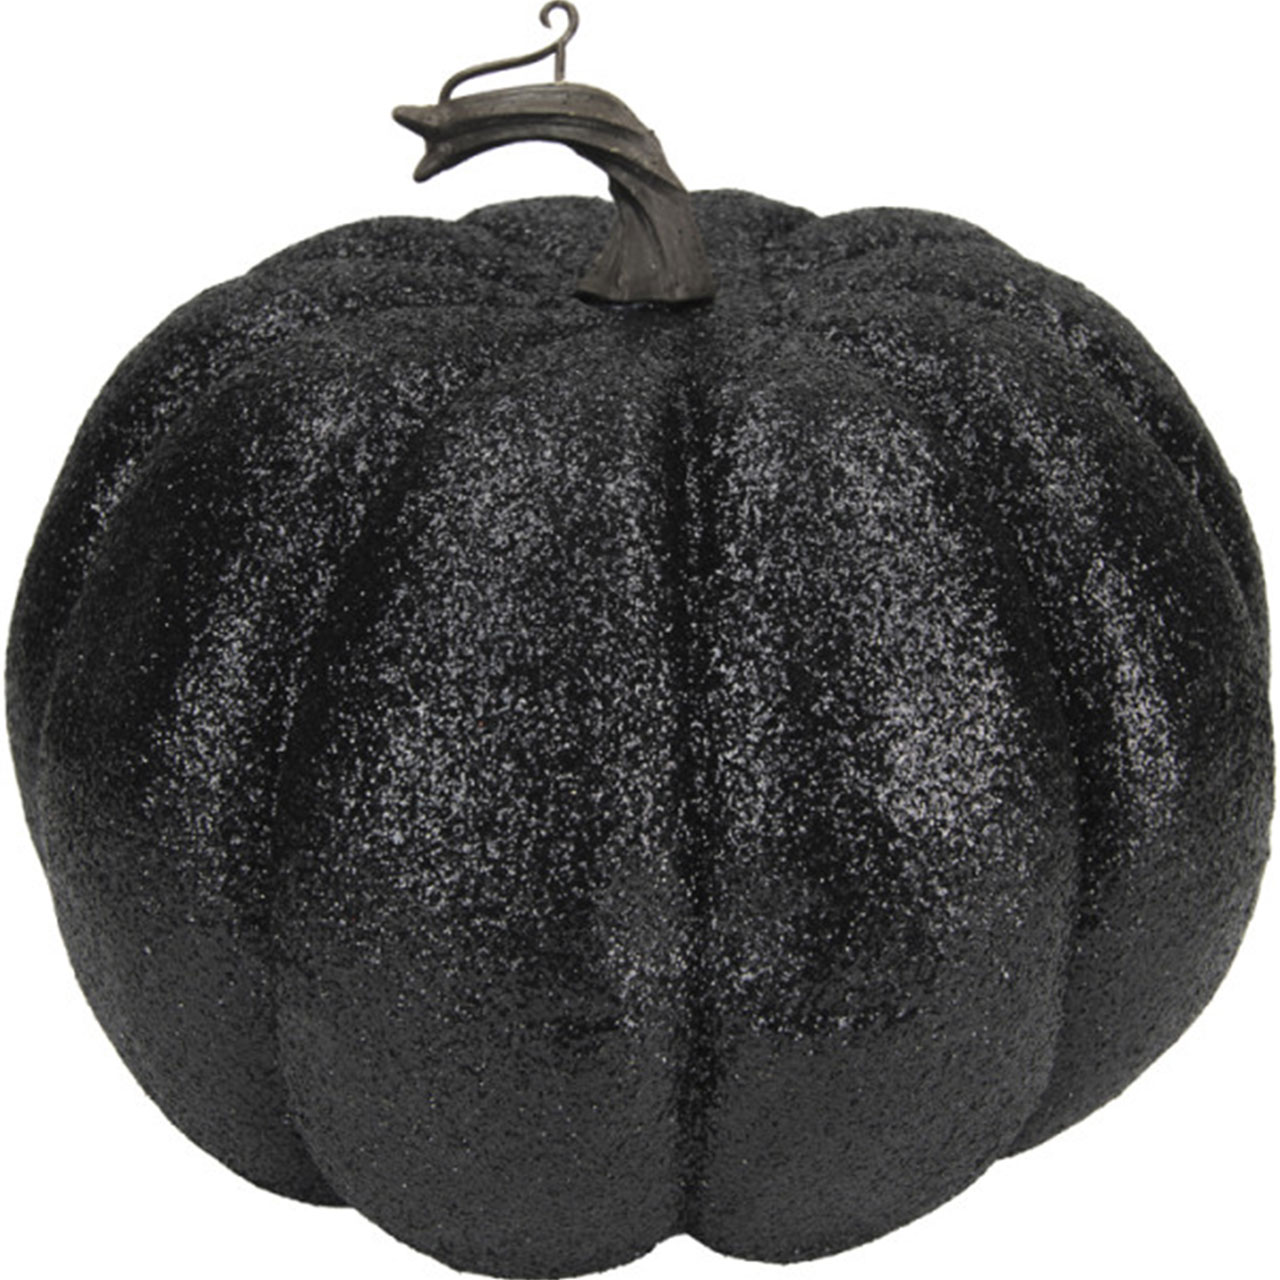 Decoration - Black Glitter Pumpkin (L)